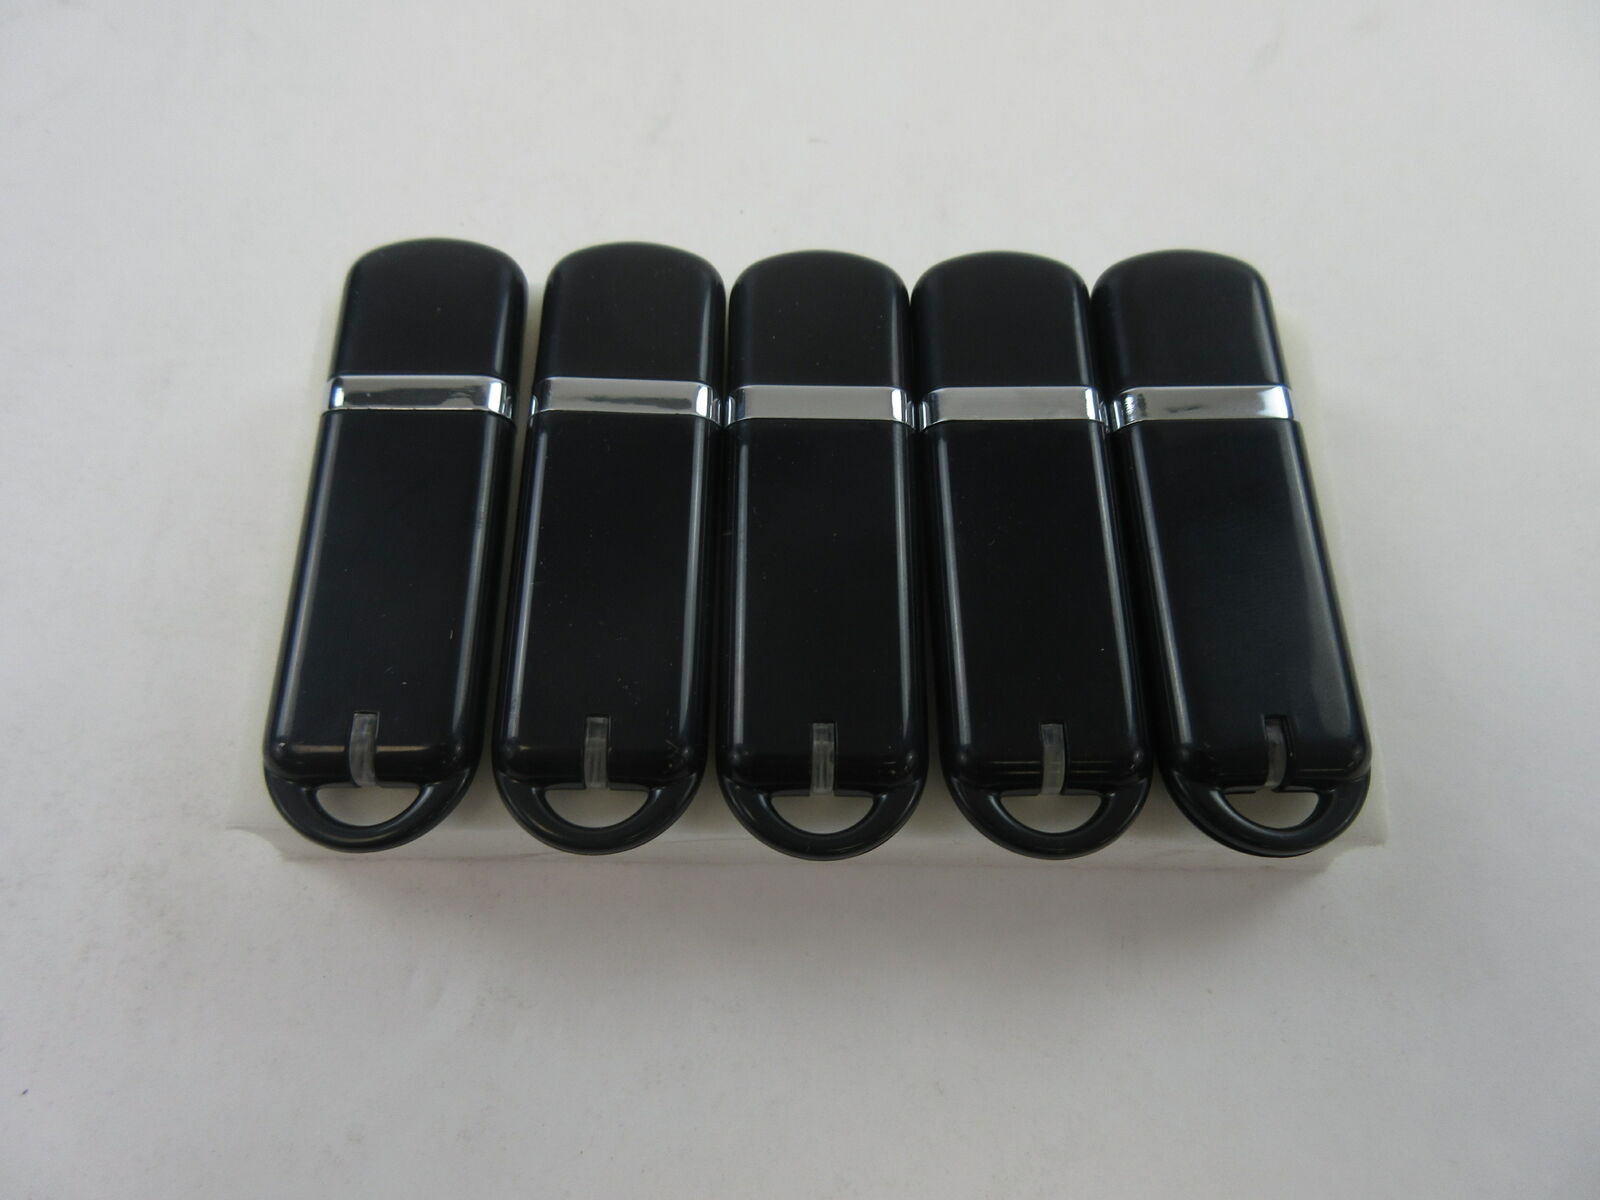 Lot of (5x) 16GB USB 3.0 Flash Drive Thumb Drive C4